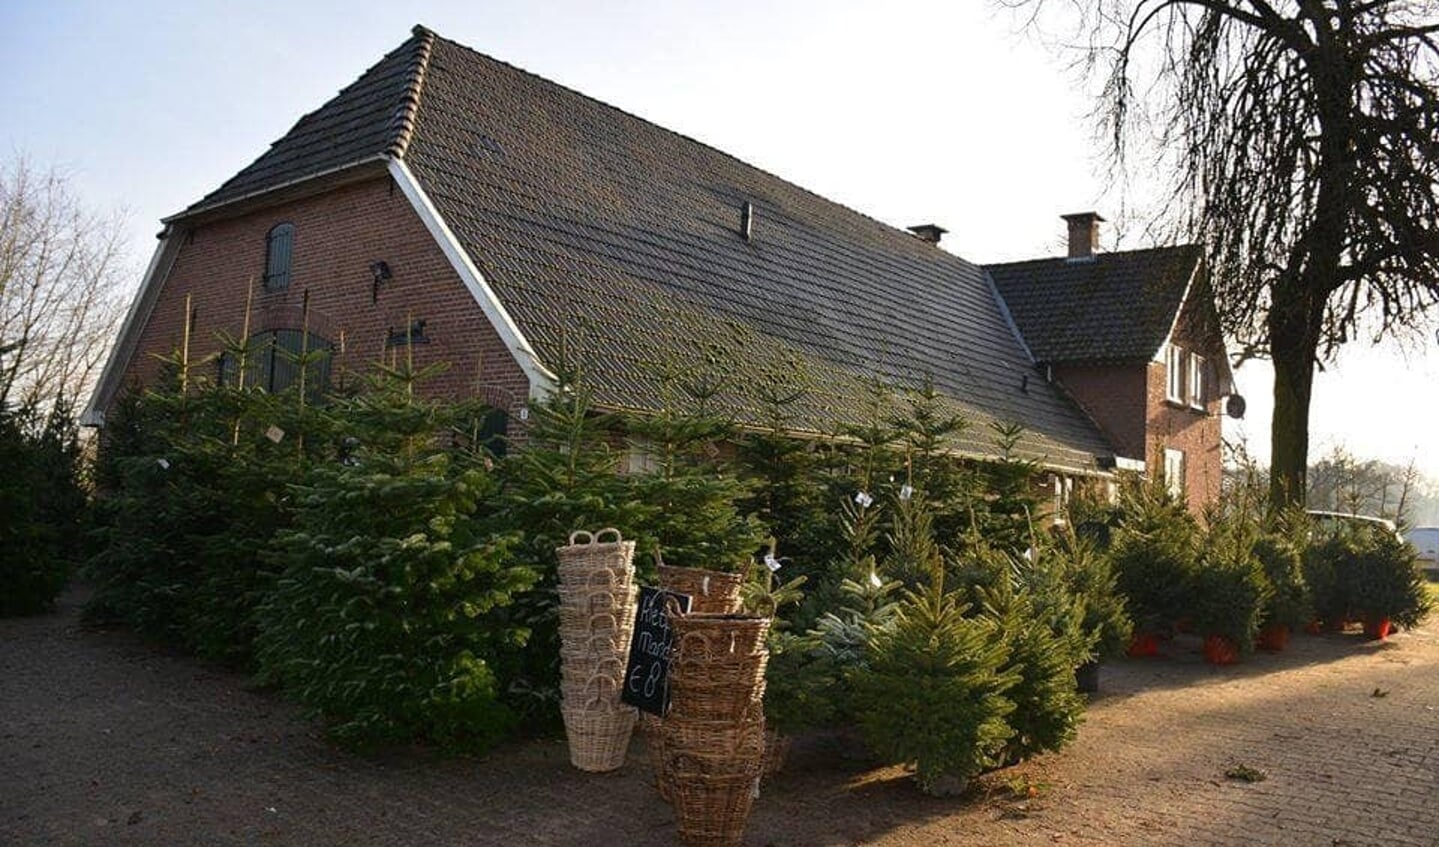 Boerderij 't Geutjen zijn kerstbomen te koop. Foto: Geutjen.nl